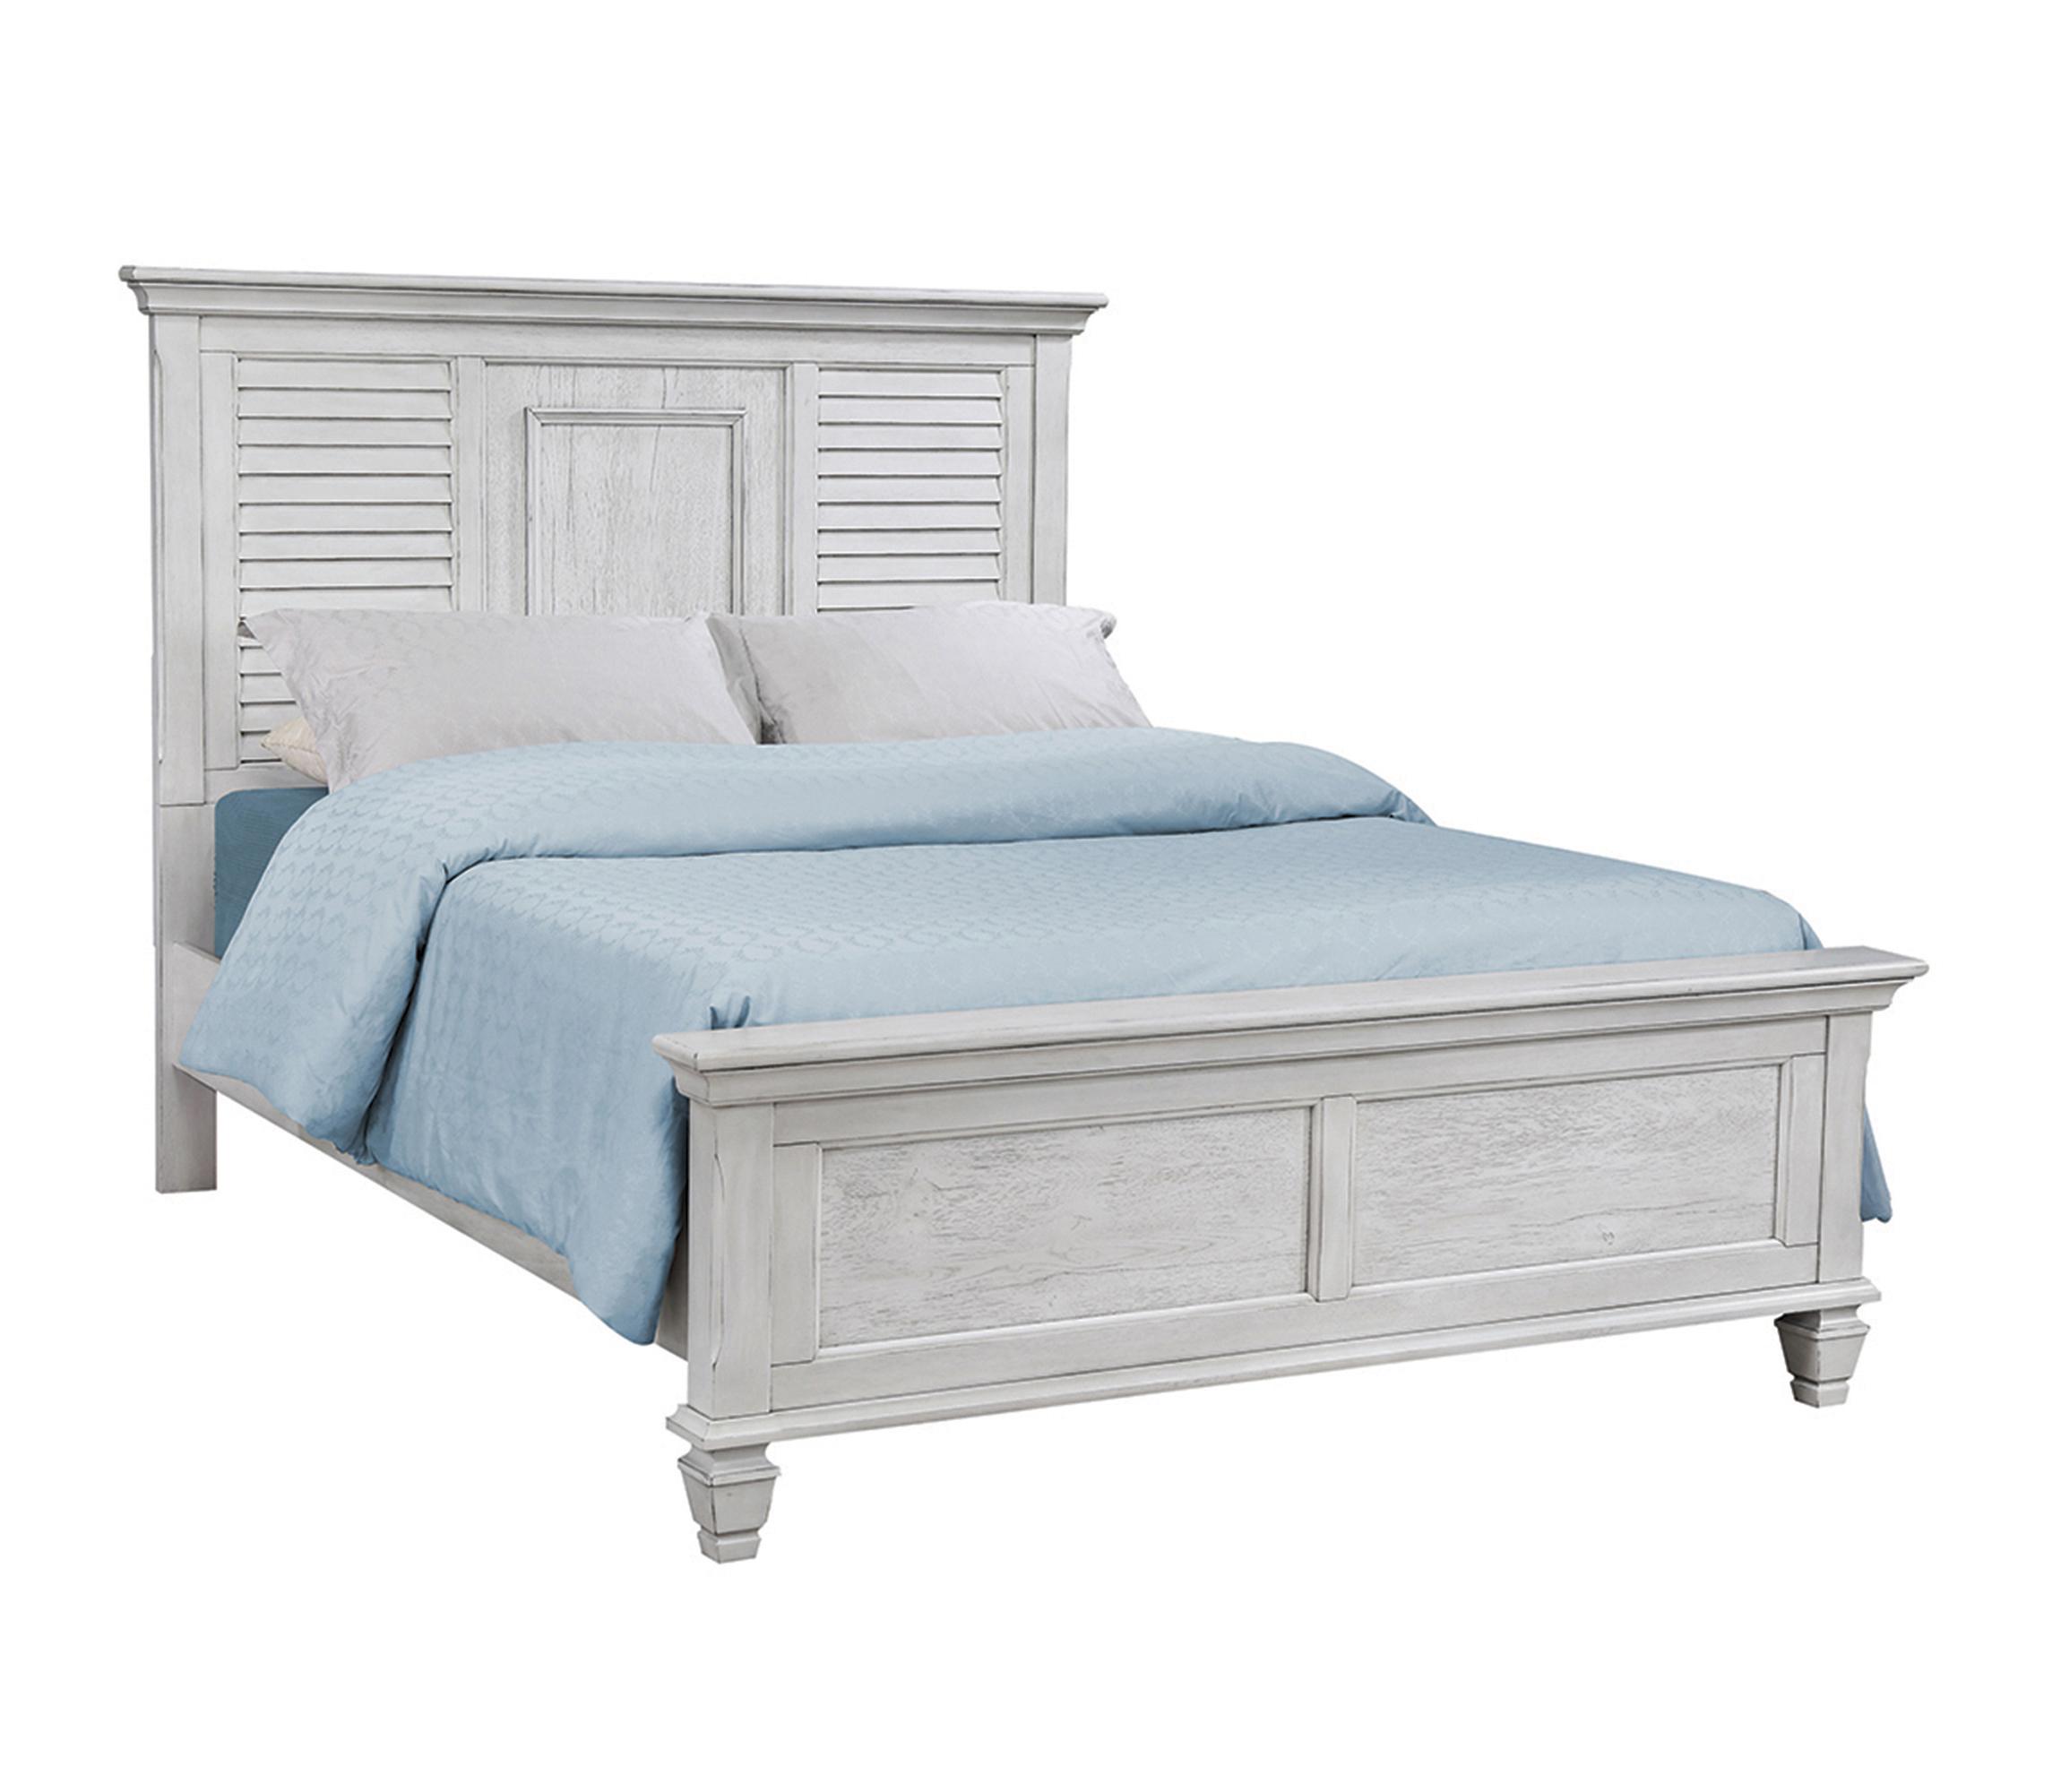 Transitional Bed 205331KE Franco 205331KE in Antique White 